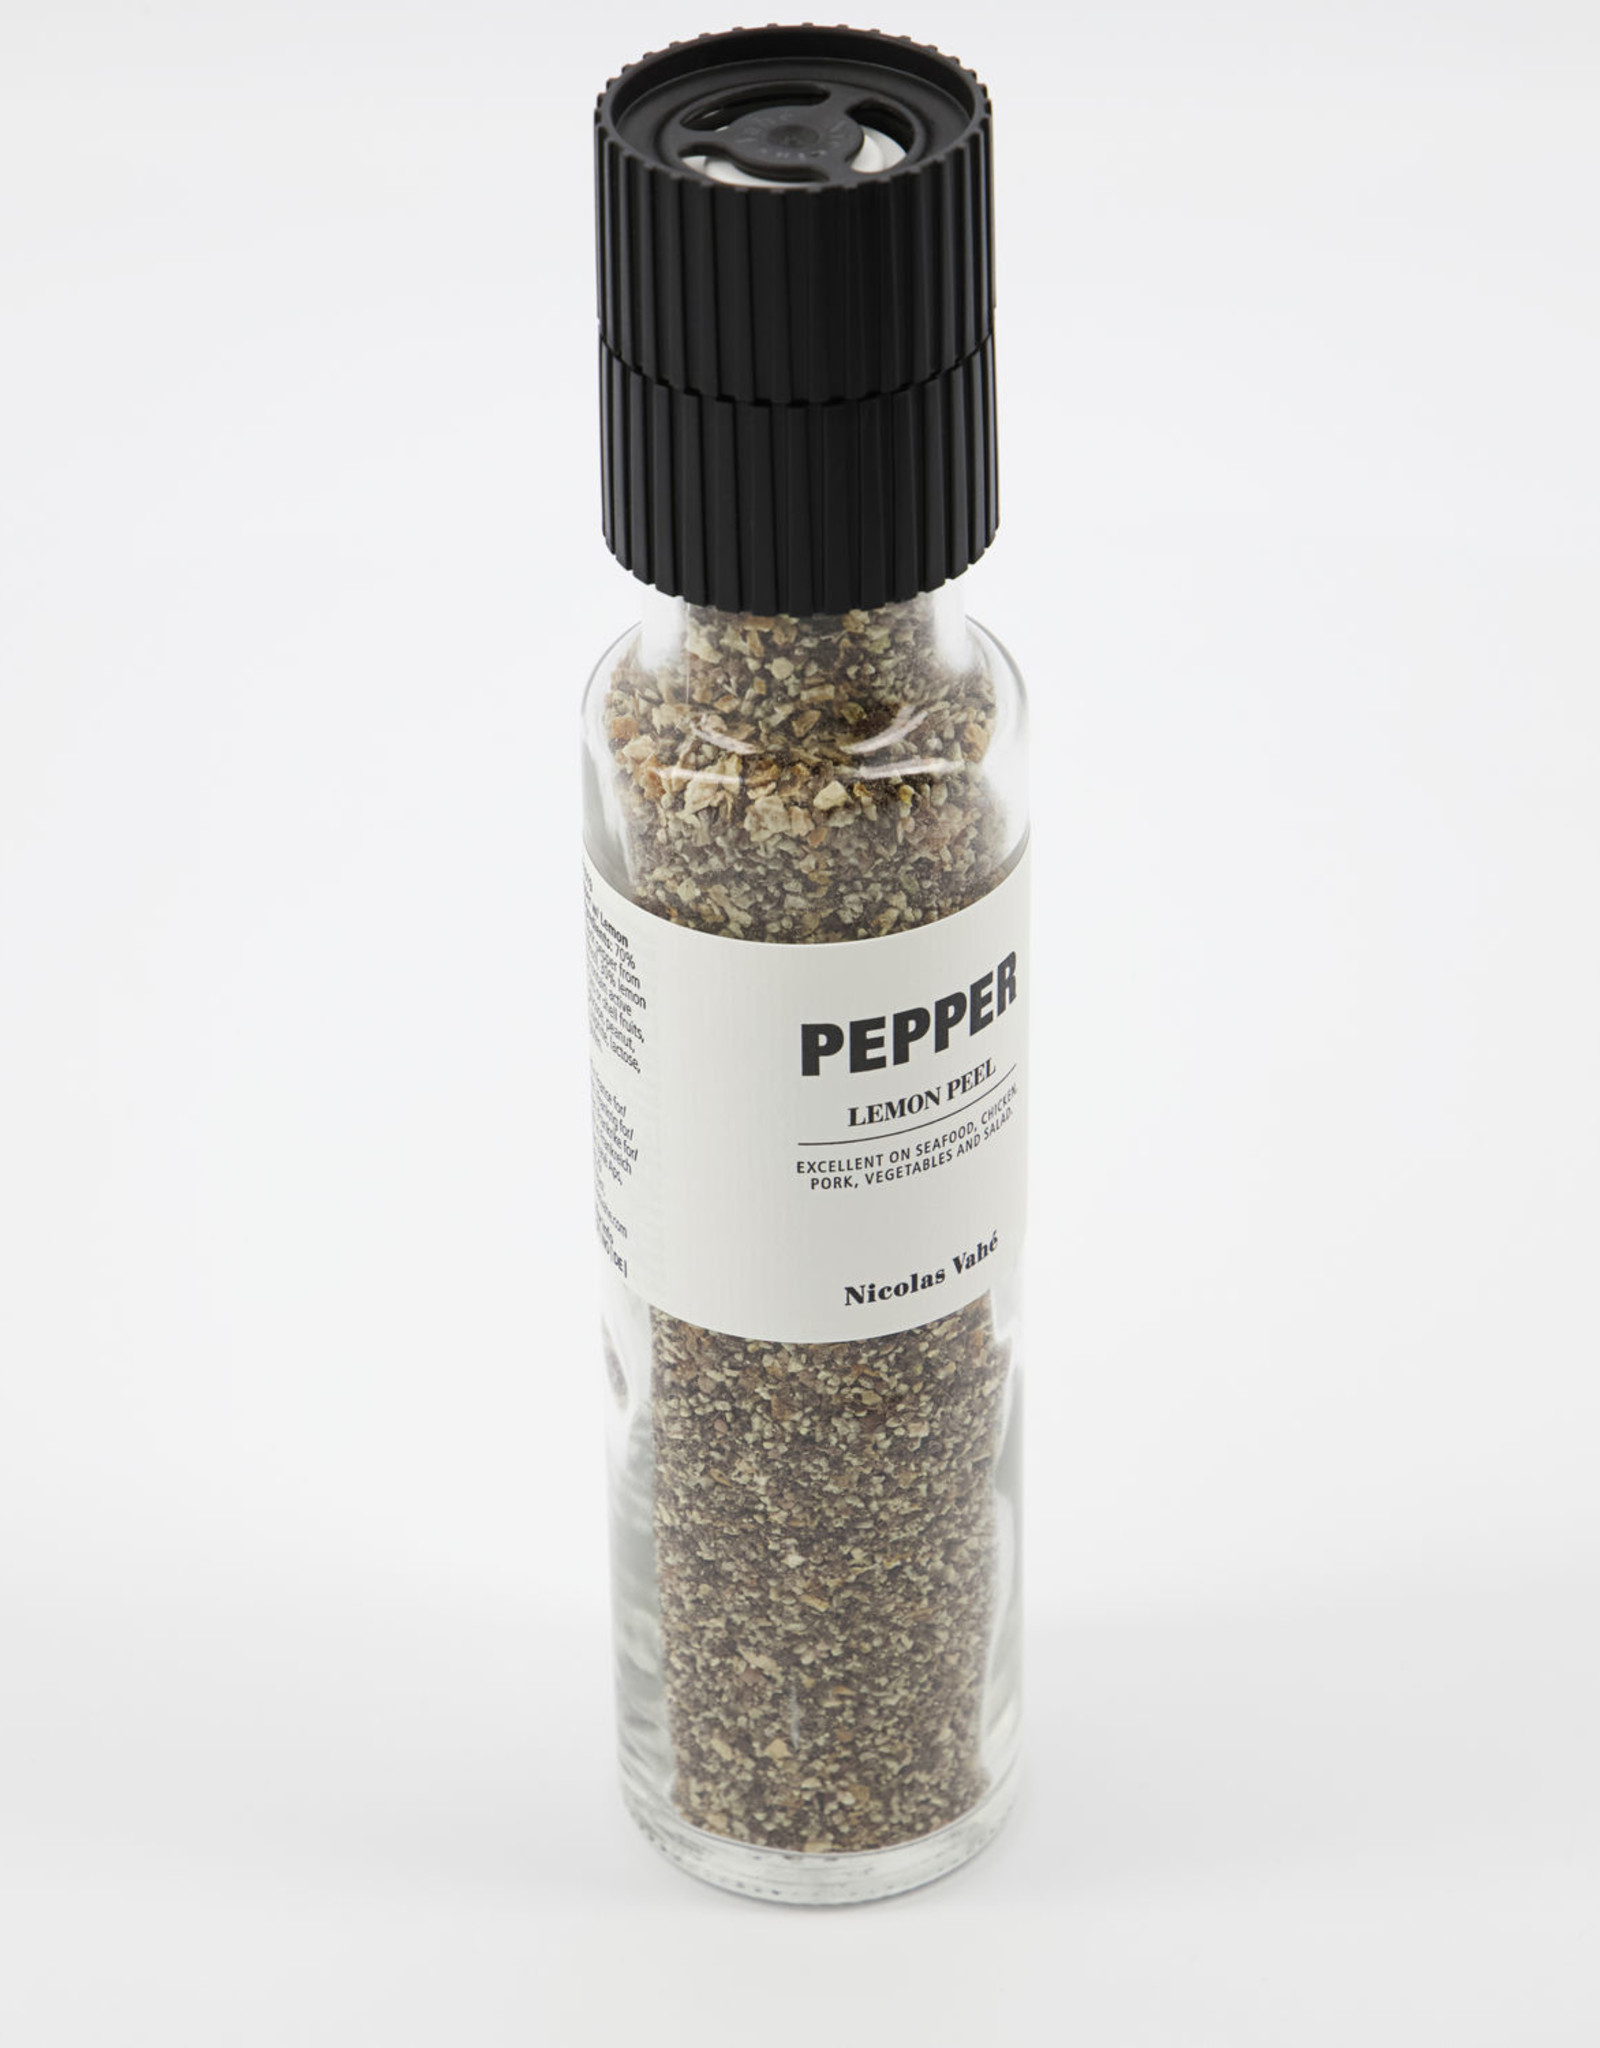 Nicolas Vahe Pepper, Lemon Peel - 150g